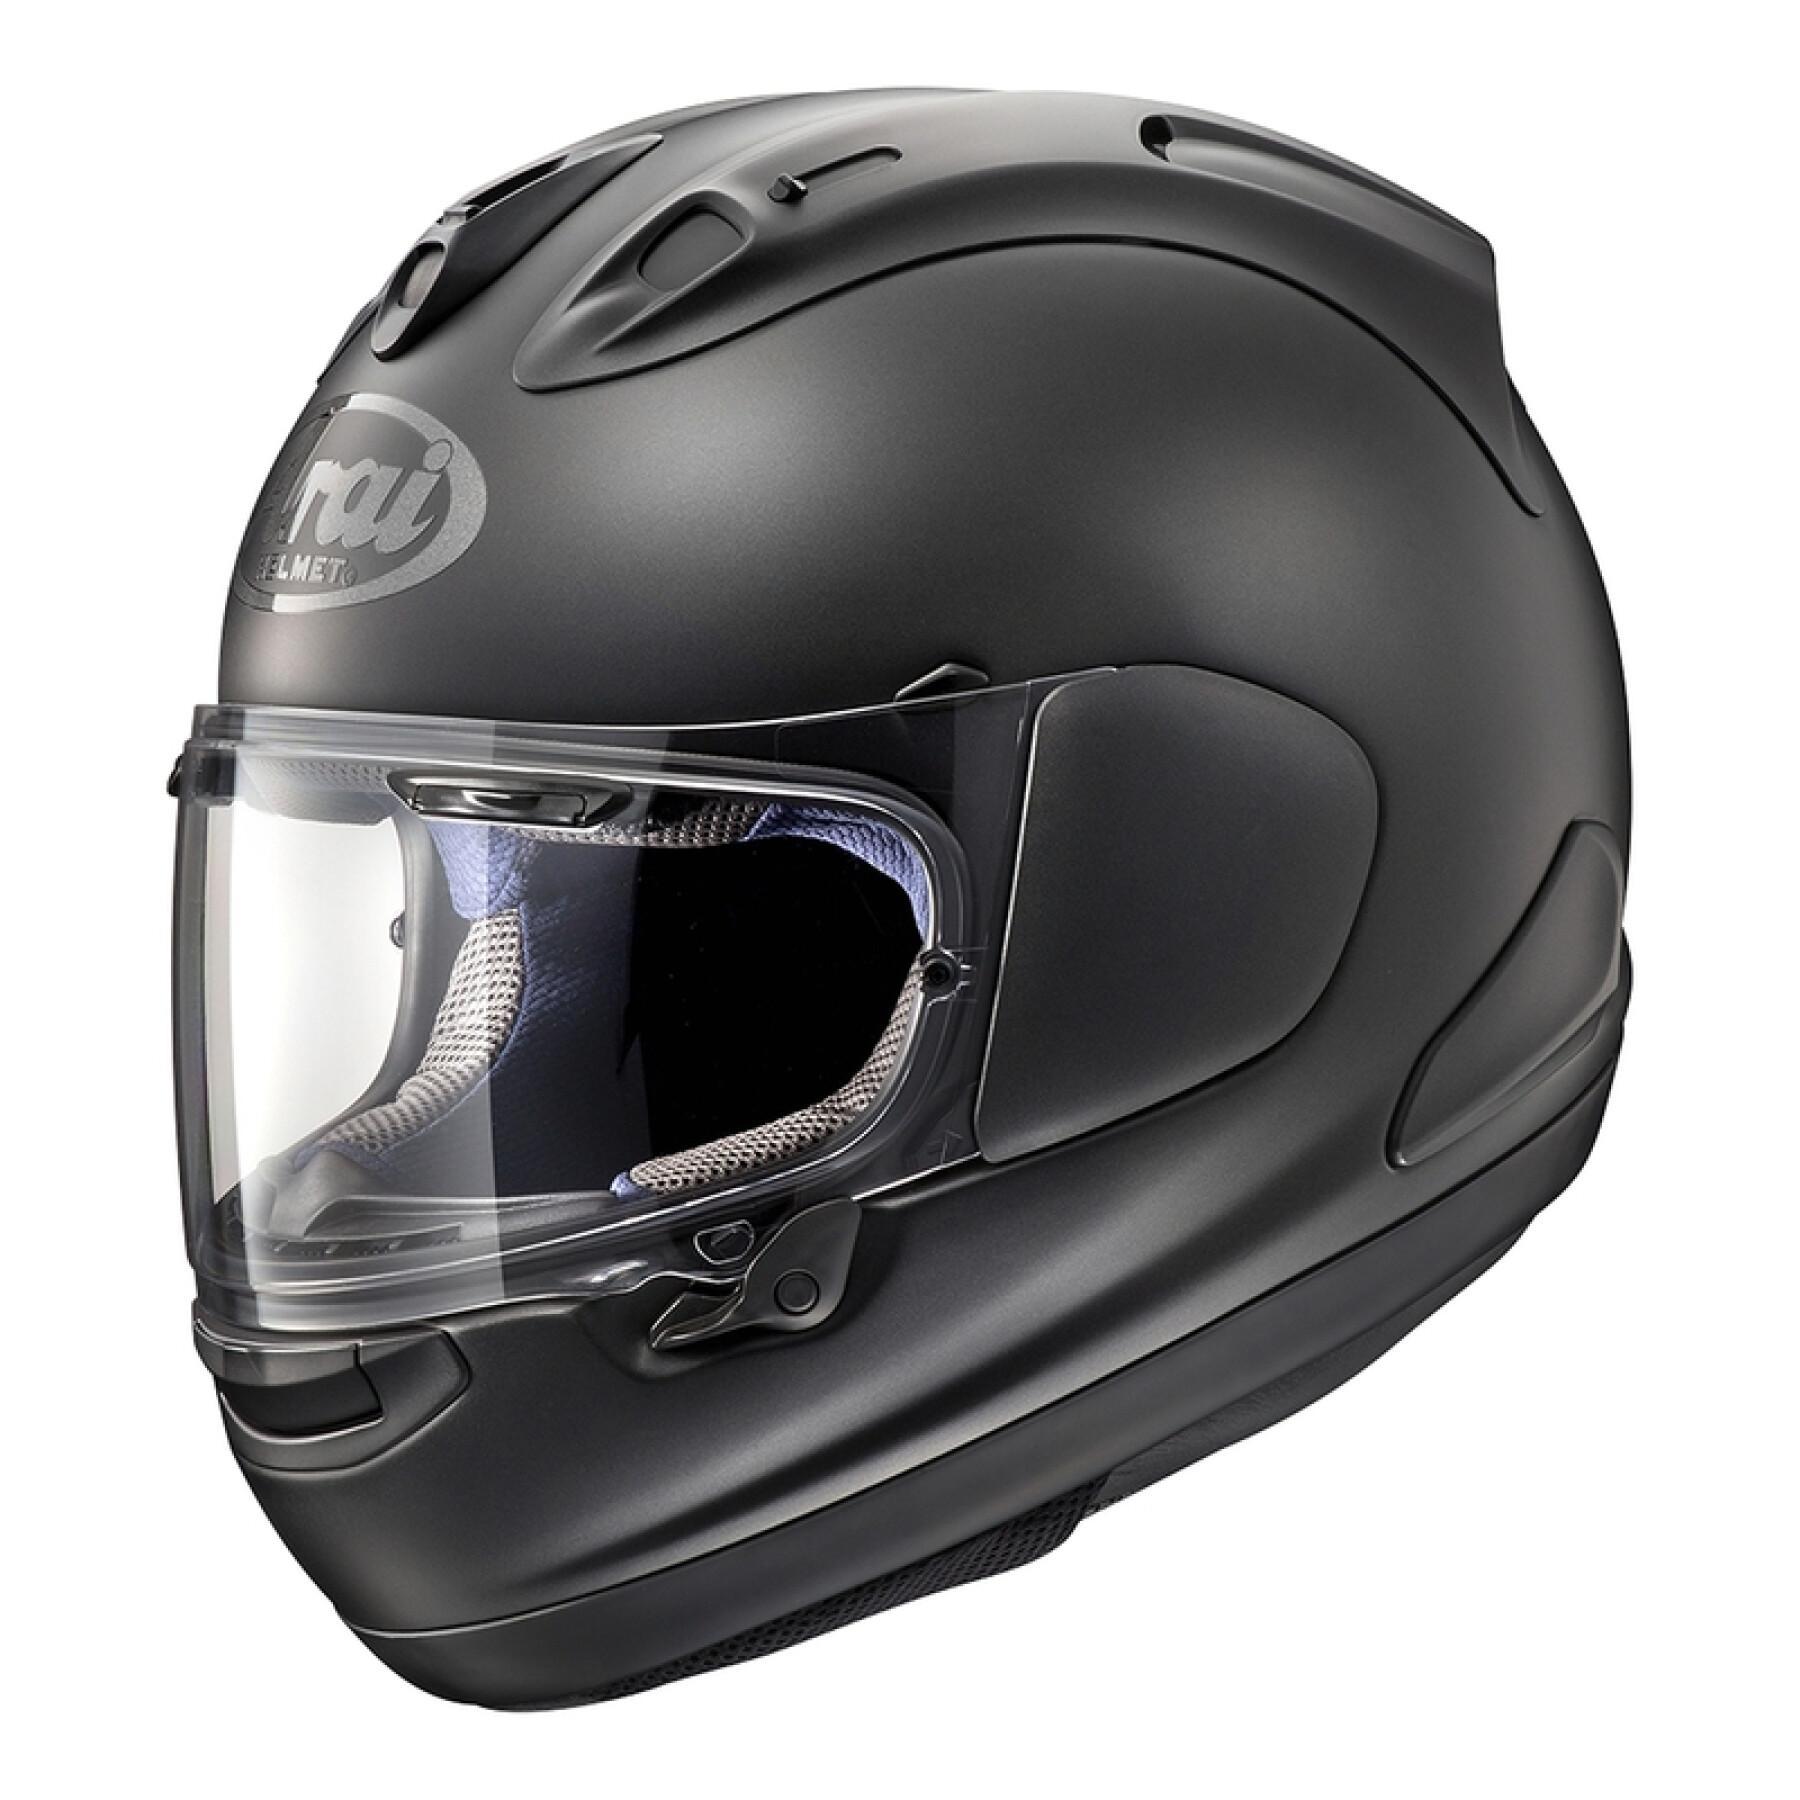 Full face motorcycle helmet Arai RX-7V - Frost